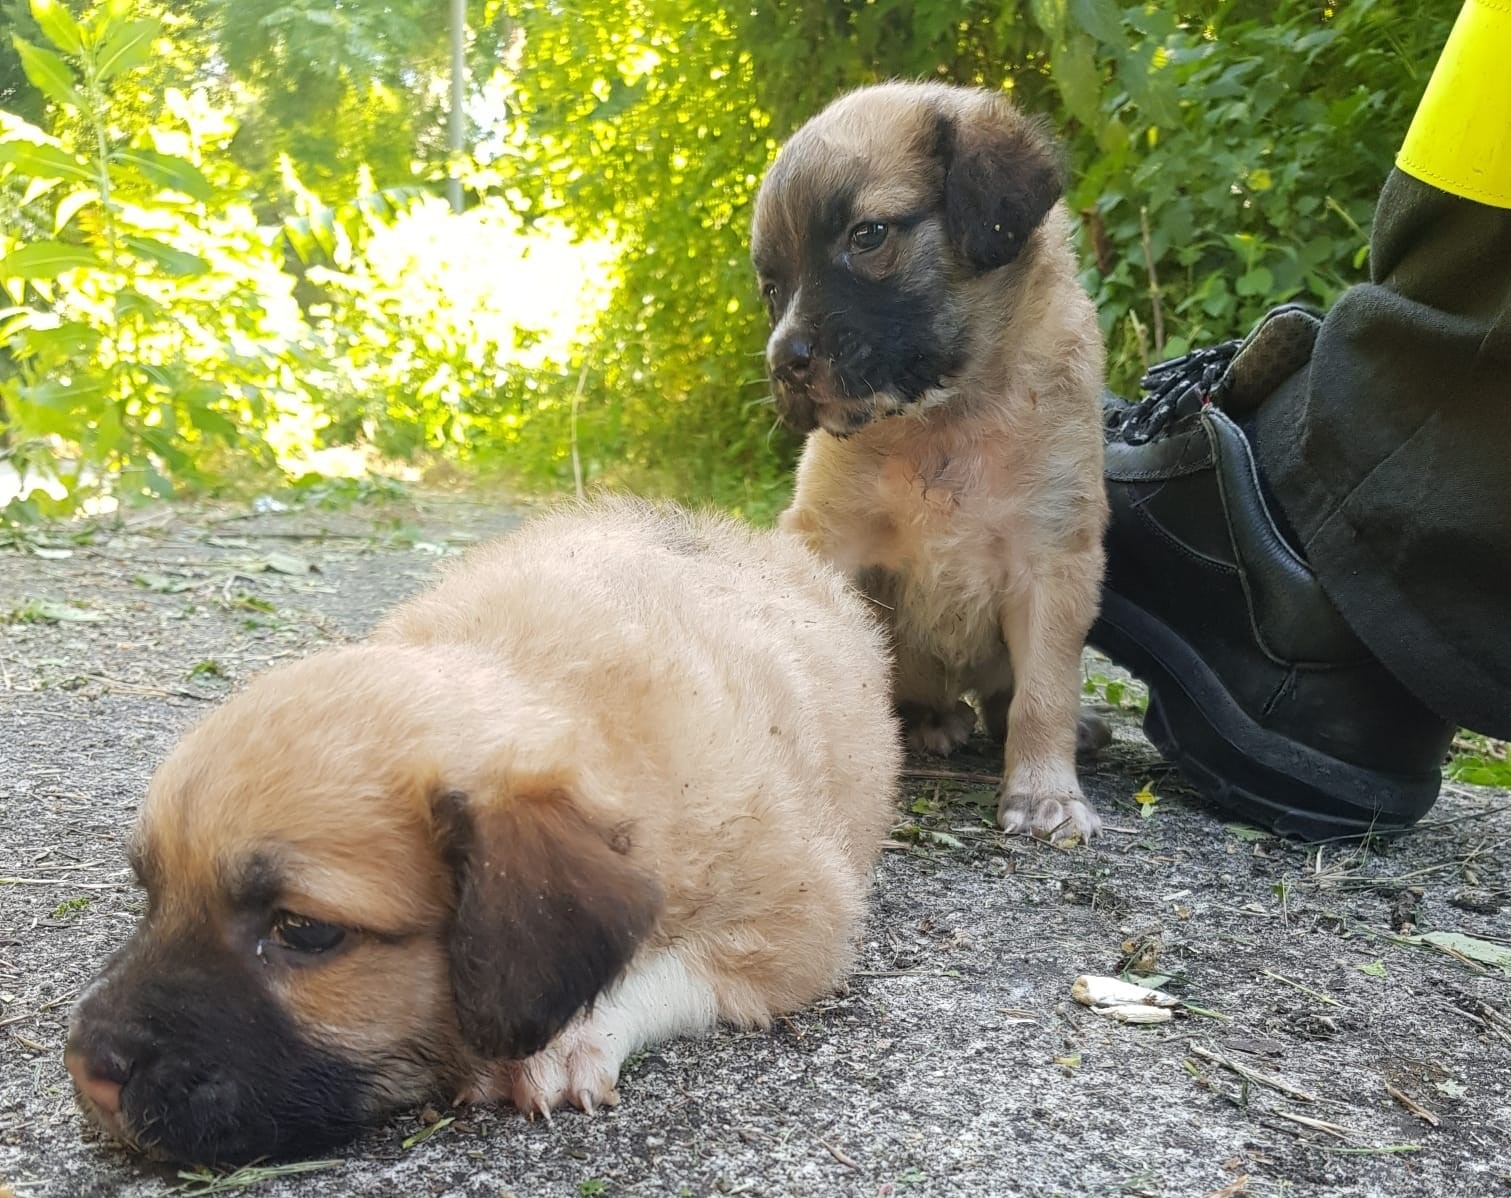 Mirabella Eclano| Cuccioli abbandonati in una scarpata salvati dai vigili del fuoco